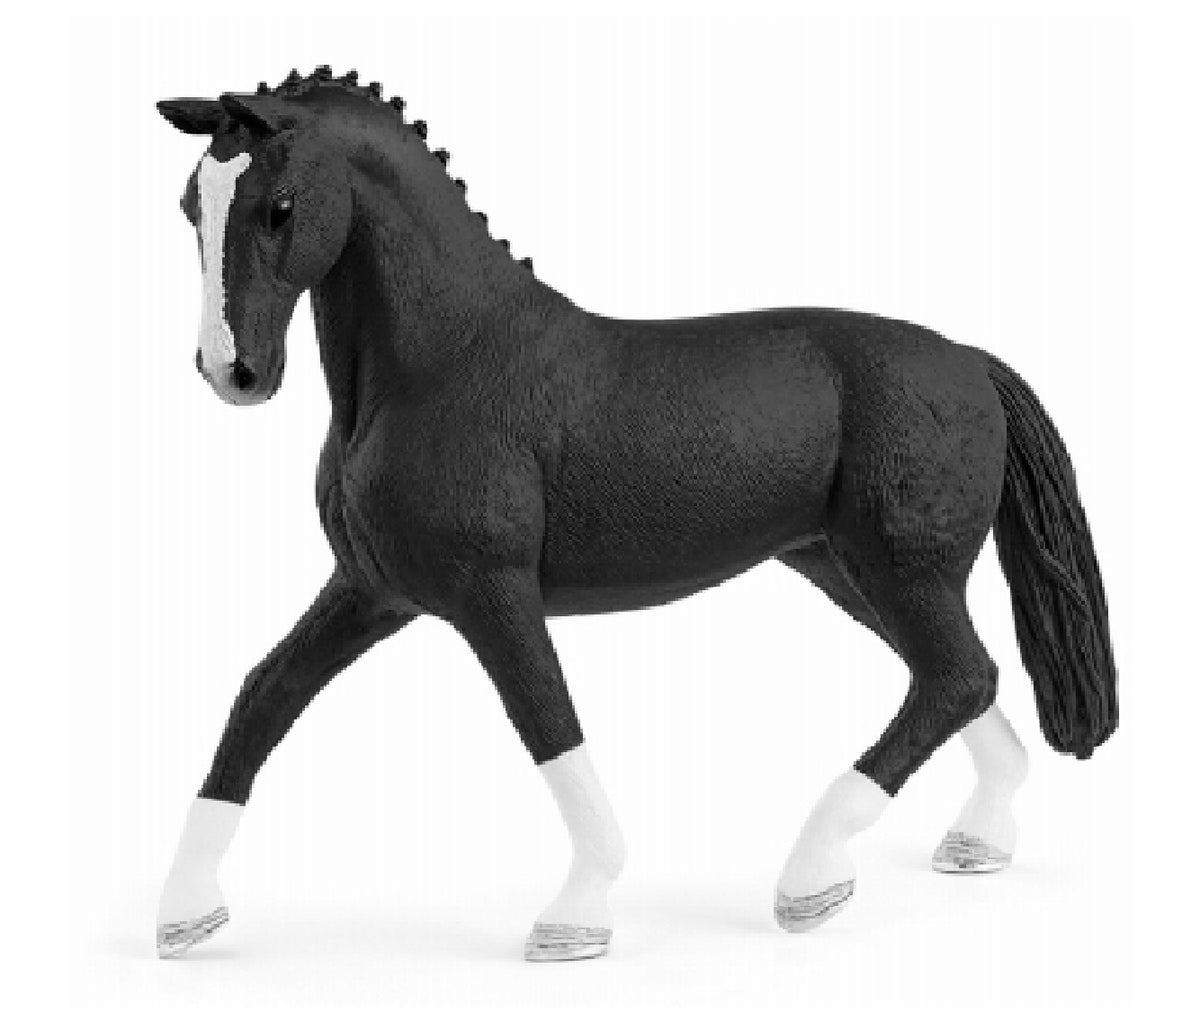 Schleich 13927 Hanoverian Mare Toy Animal Figurine, Black